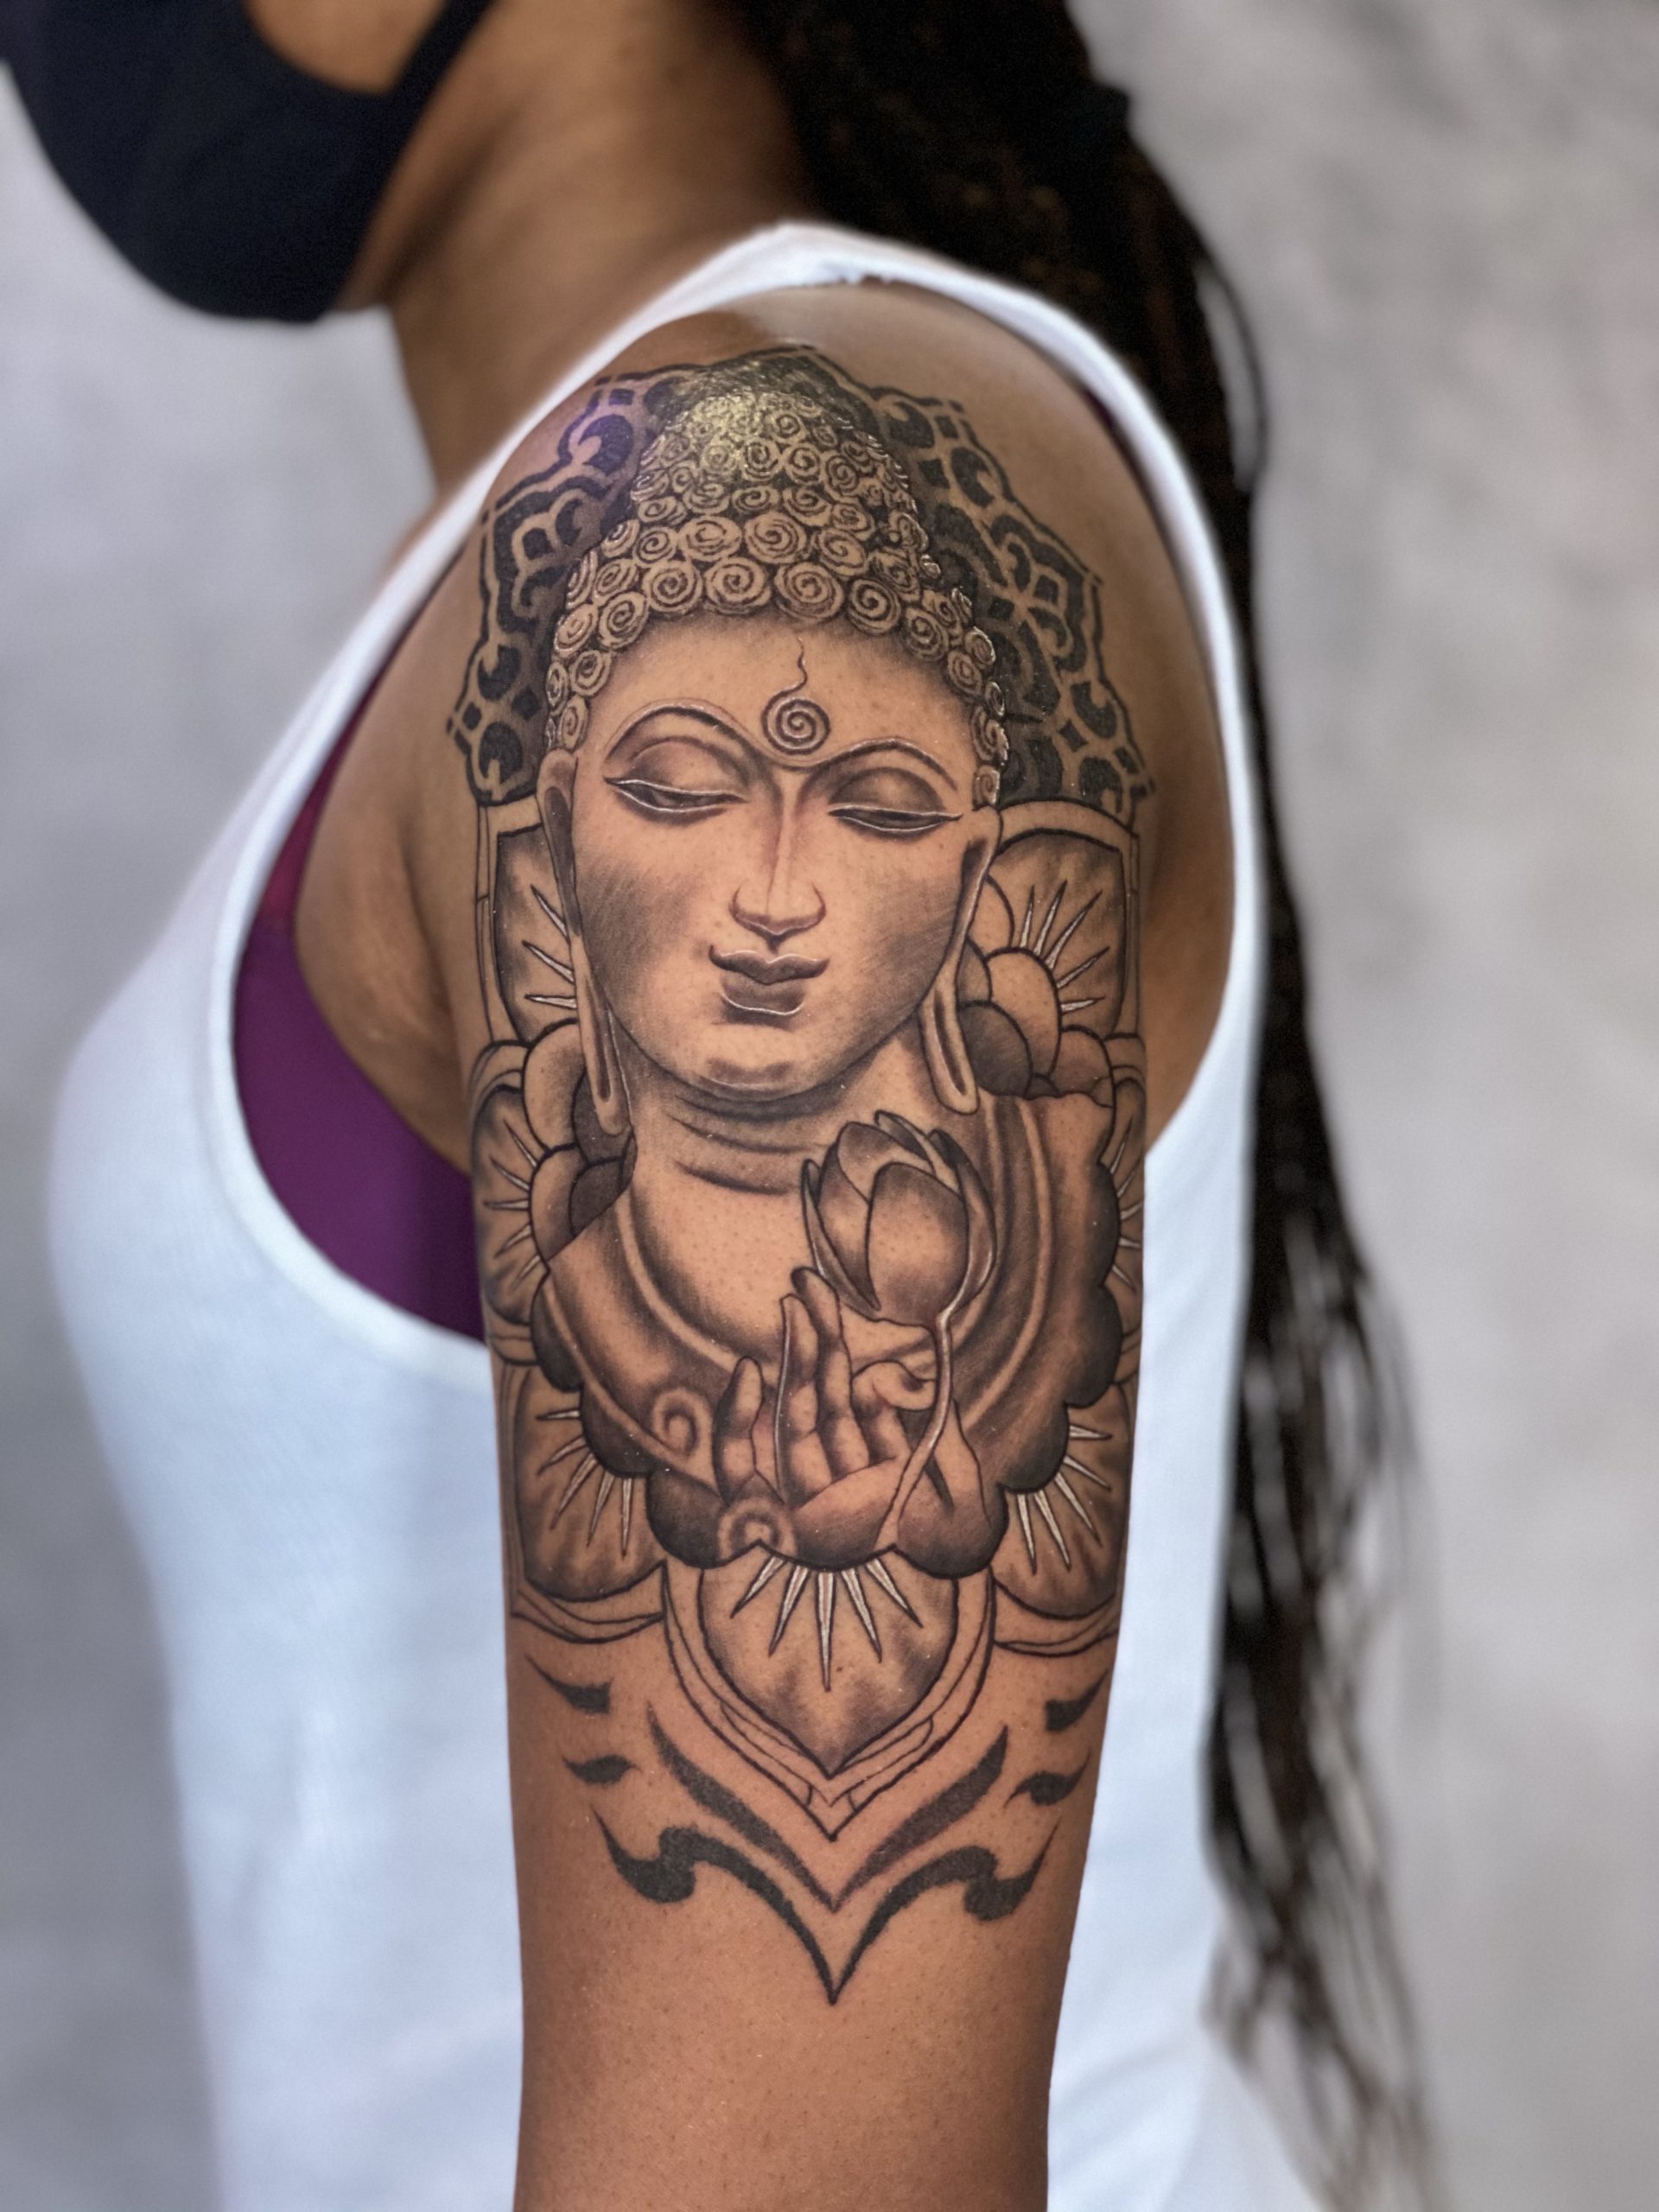 Buddha tattoo ✊ | Buddah tattoo, Hand tattoos for women, Buddha tattoo